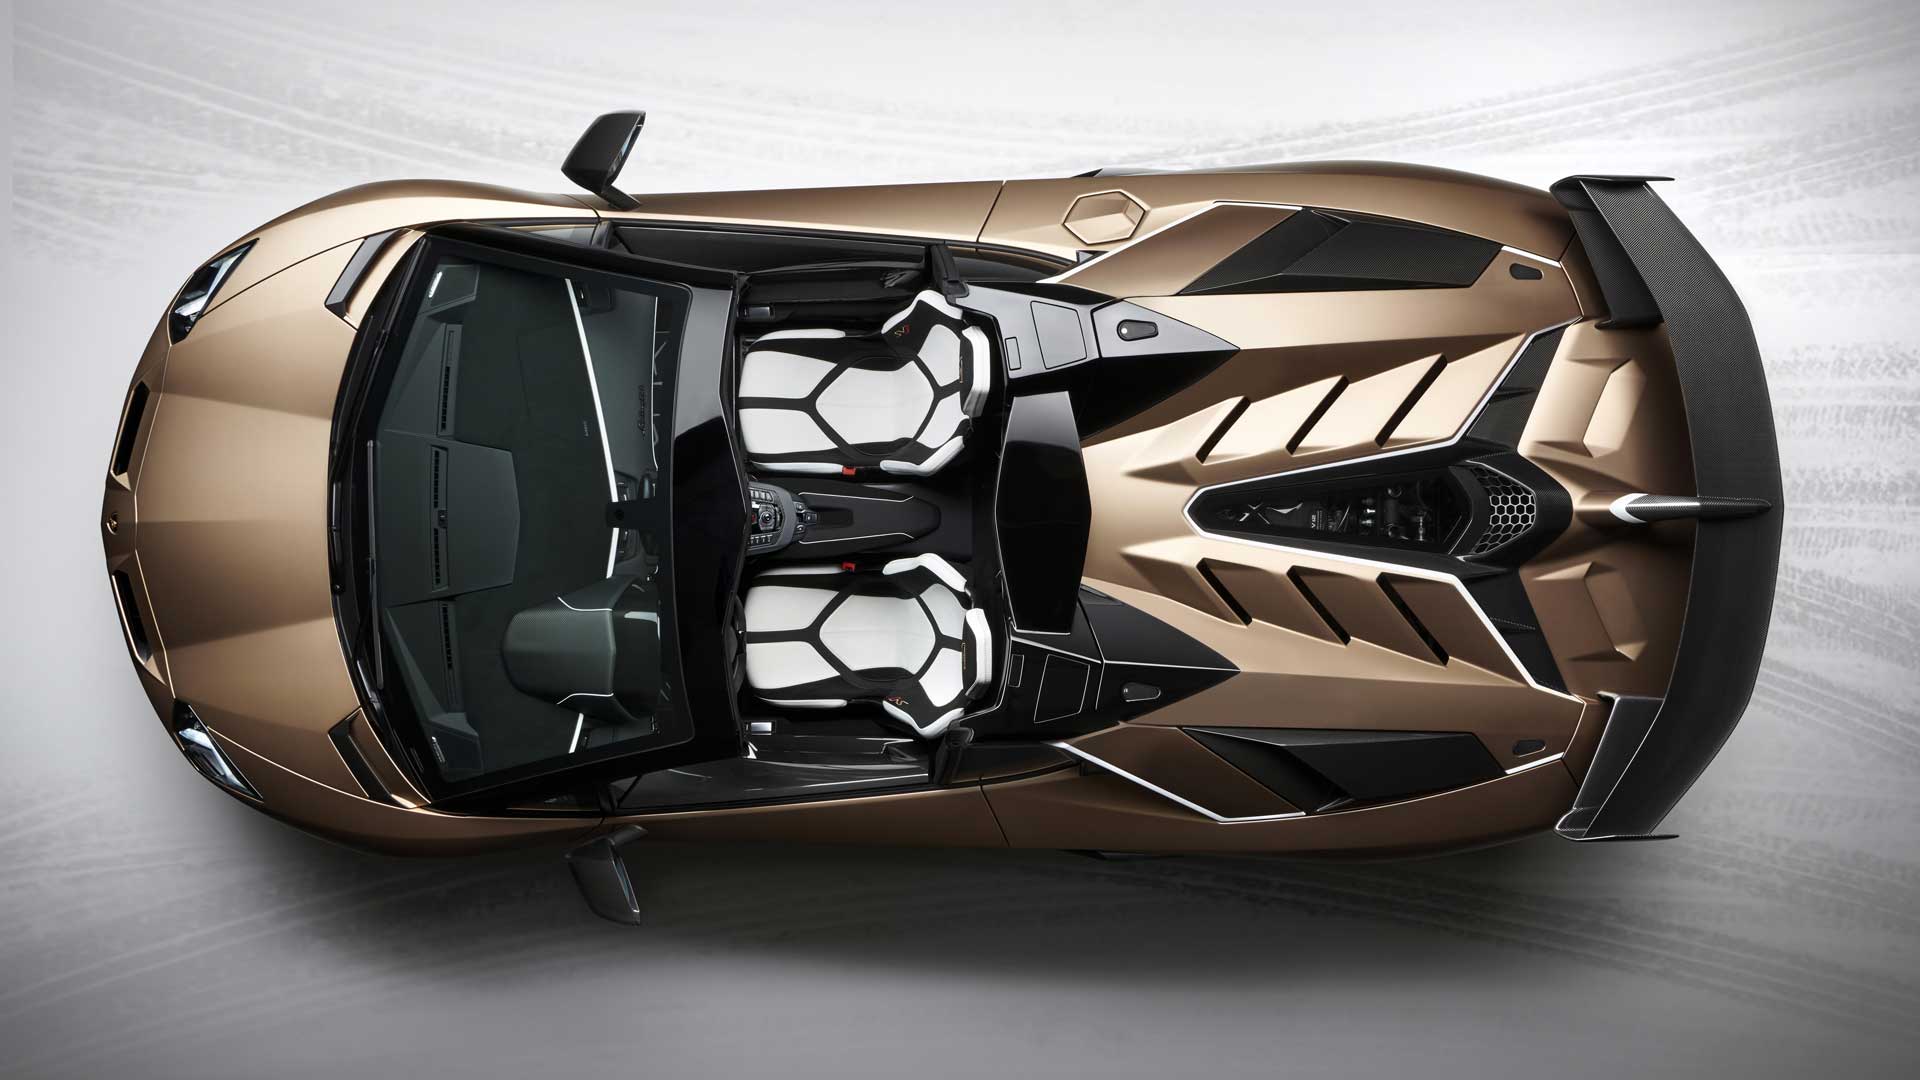 Lamborghini-Aventador-SVJ-robb-report-italia